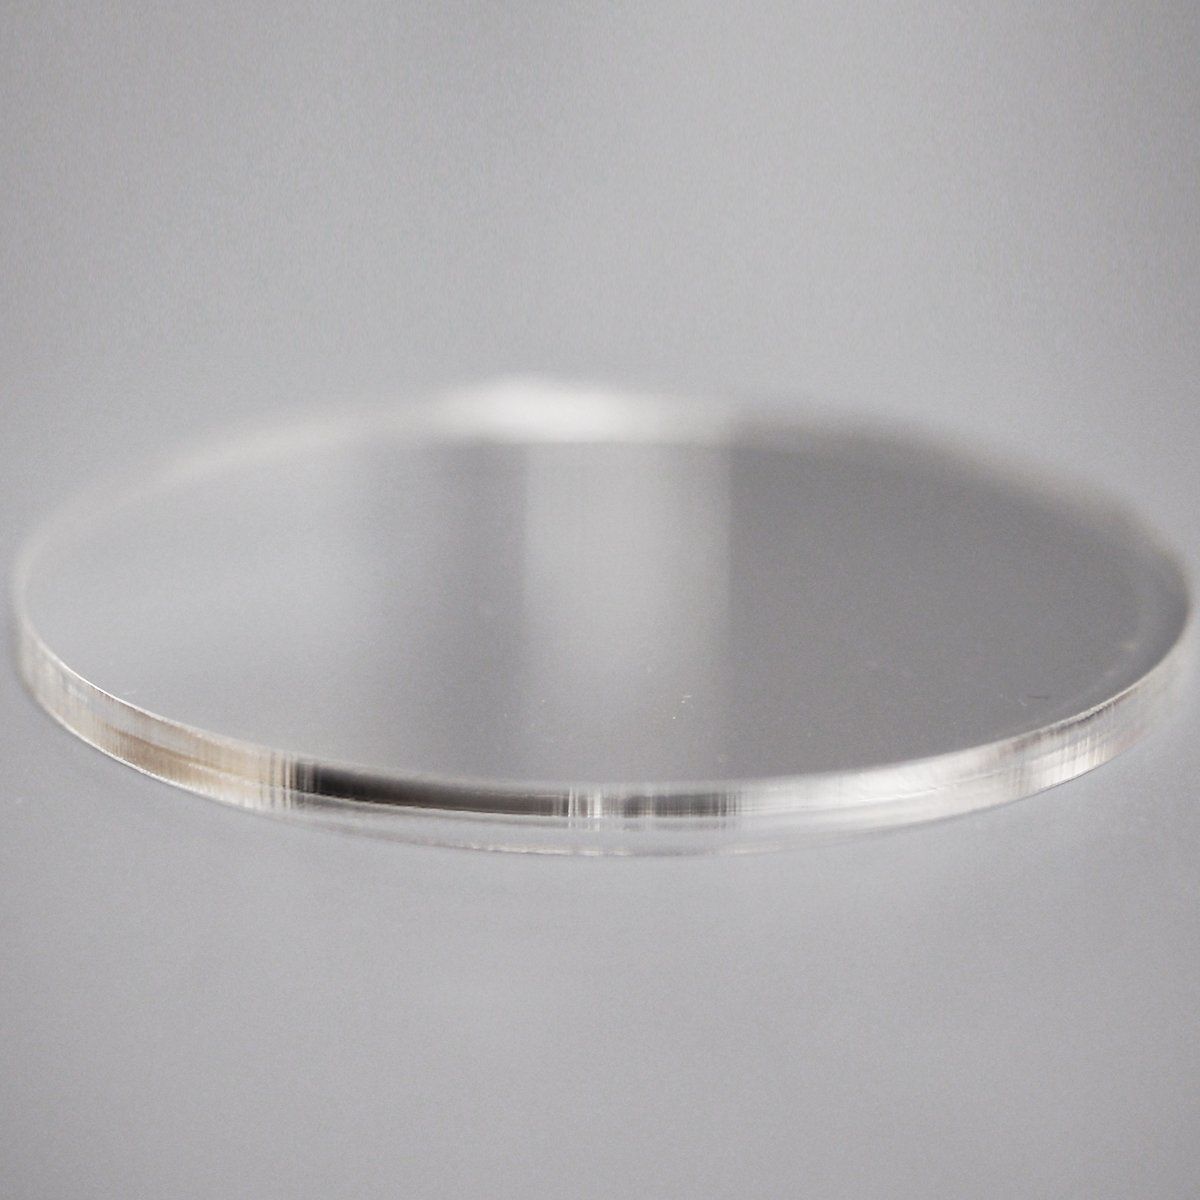 透明 アクリル 3mm厚 円形 直径 6cm 10個セット - メルカリ